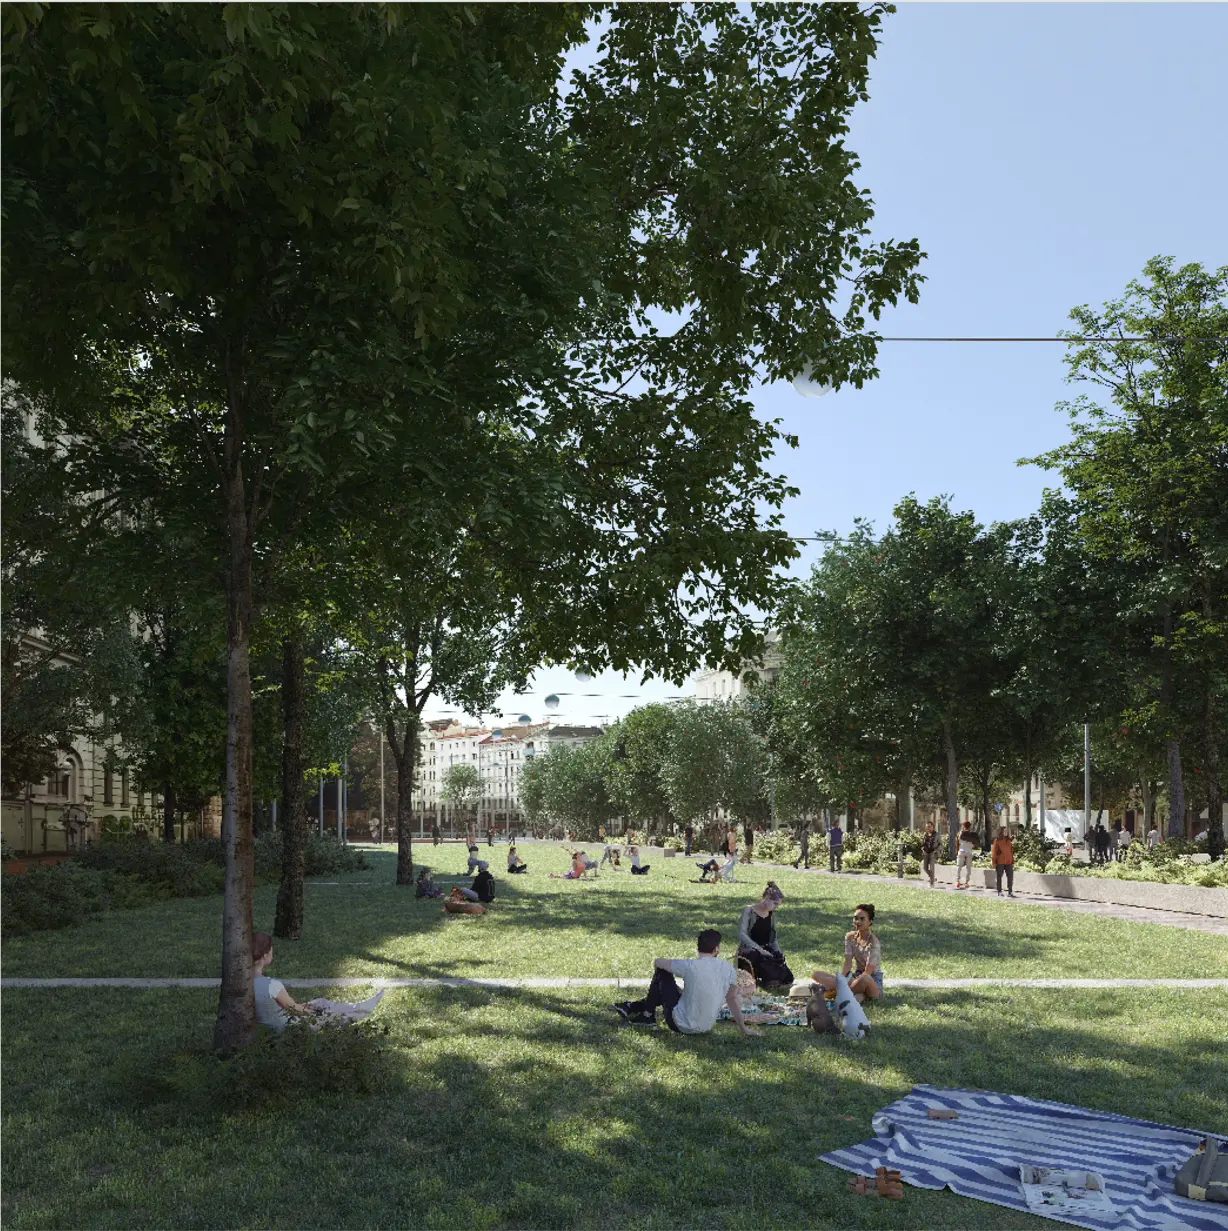 Rendering: Parklandschaft, am Rasen sitzen Menschen beschattet durch Bäume. Im Hintergrund blitzen Gründerzeitbauten hervor.